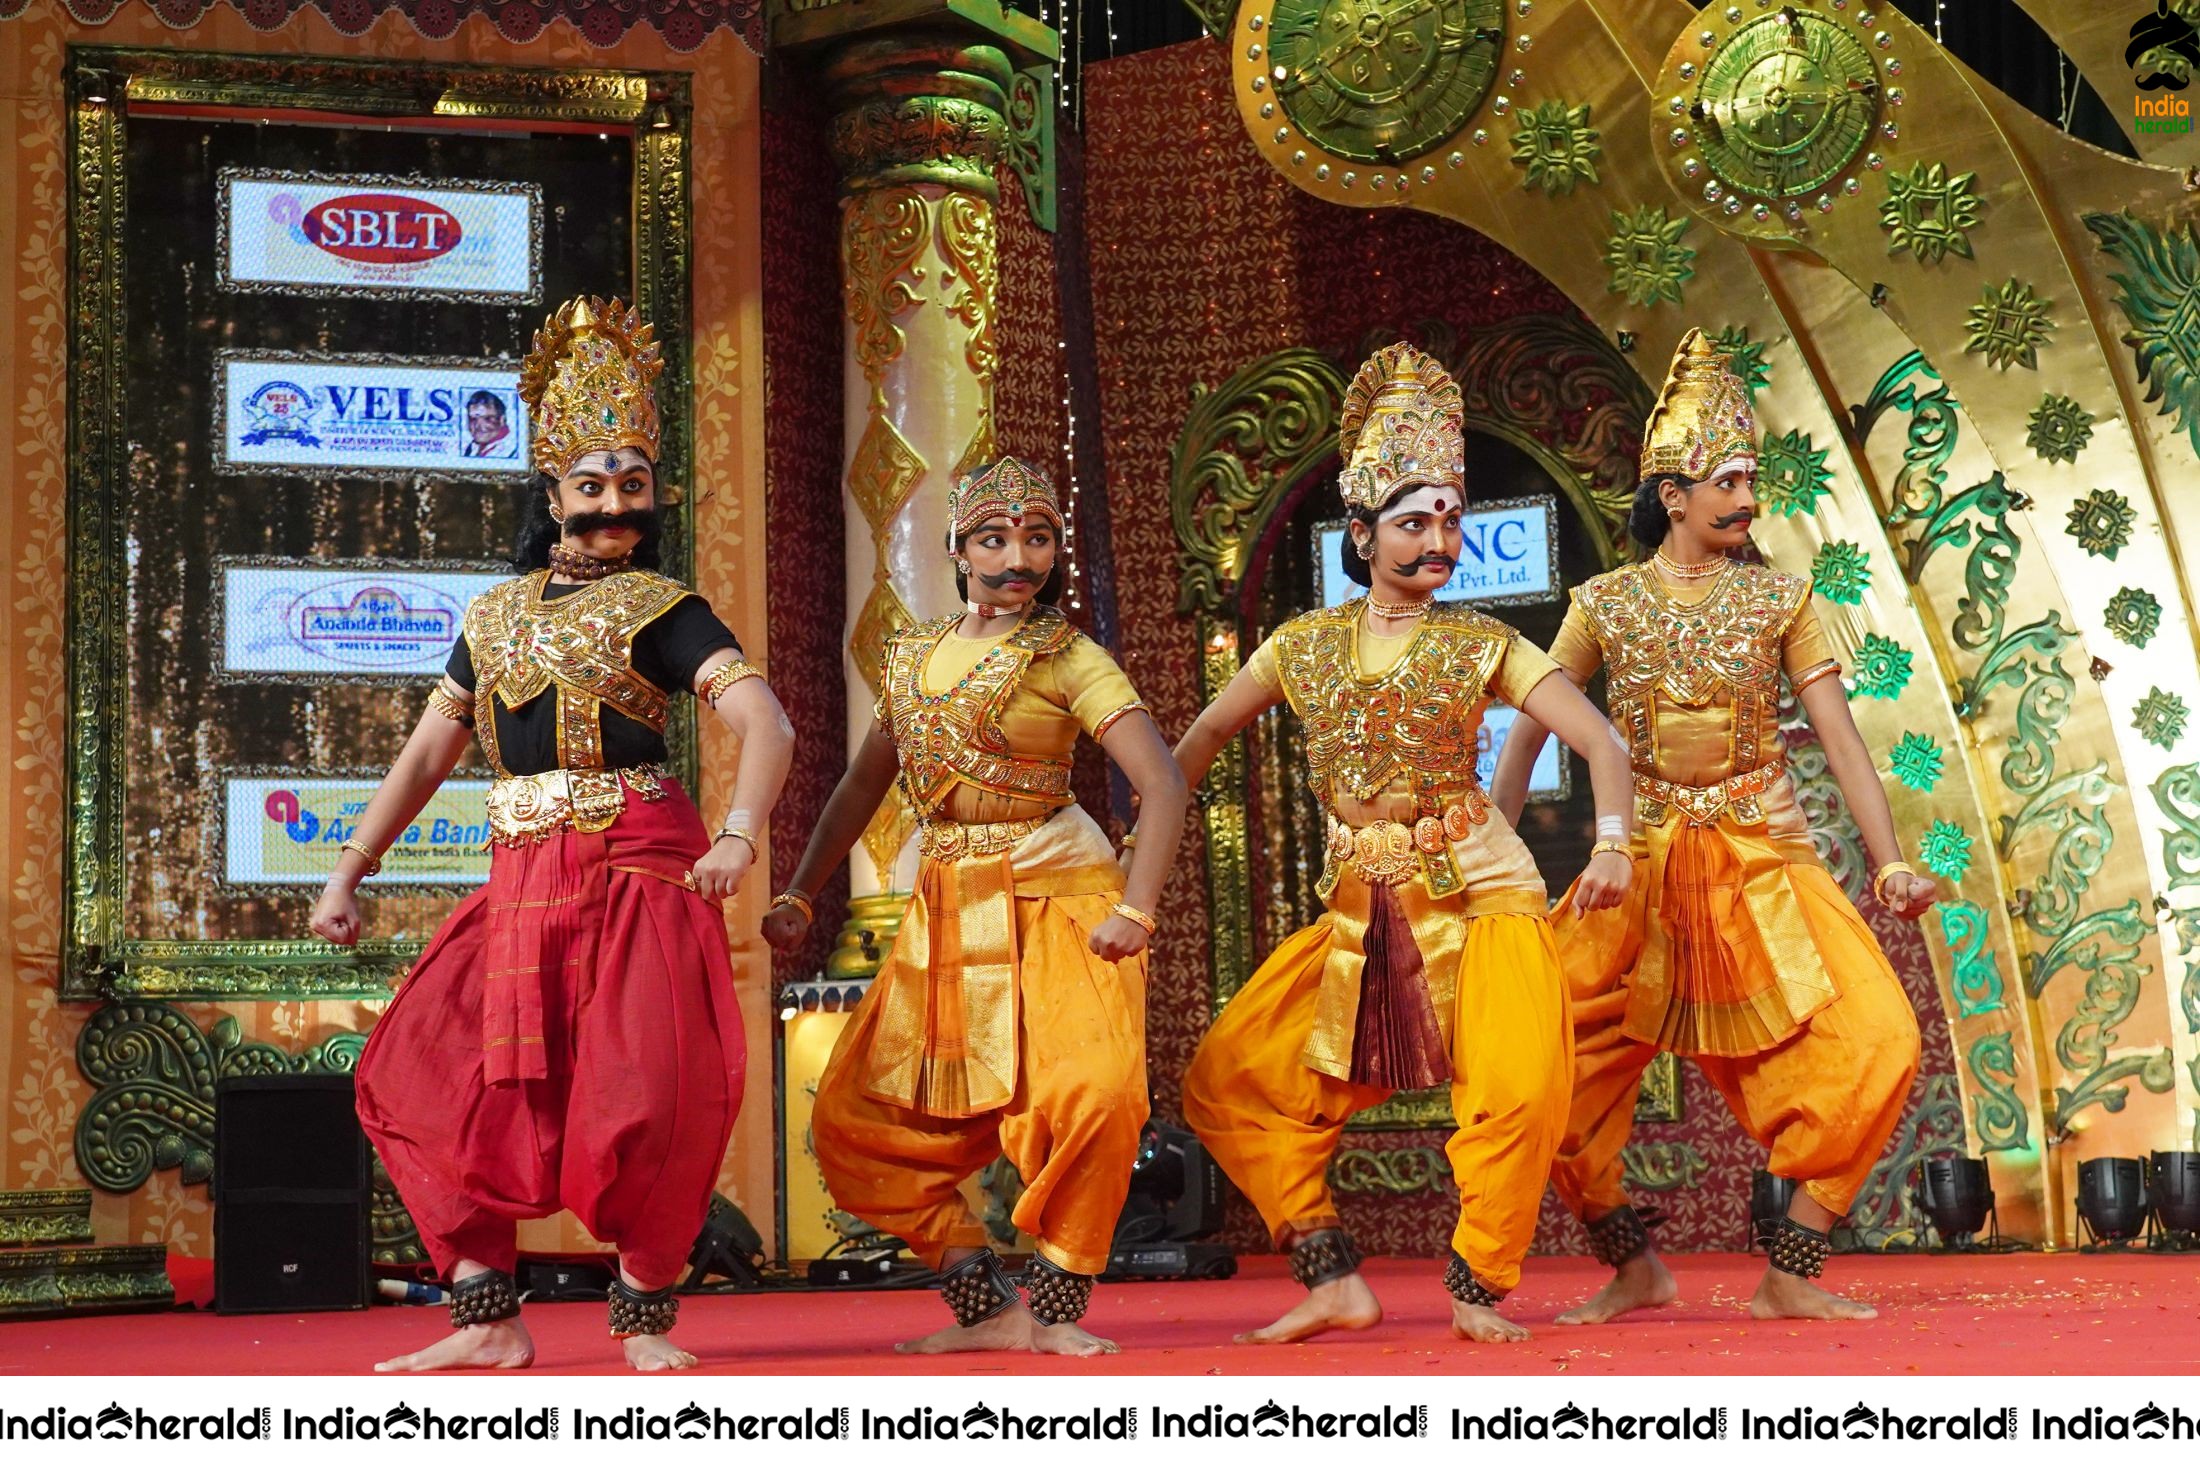 Chennaiyil Thiruvaiyaru Season 15 Day 5 Stills Set 1